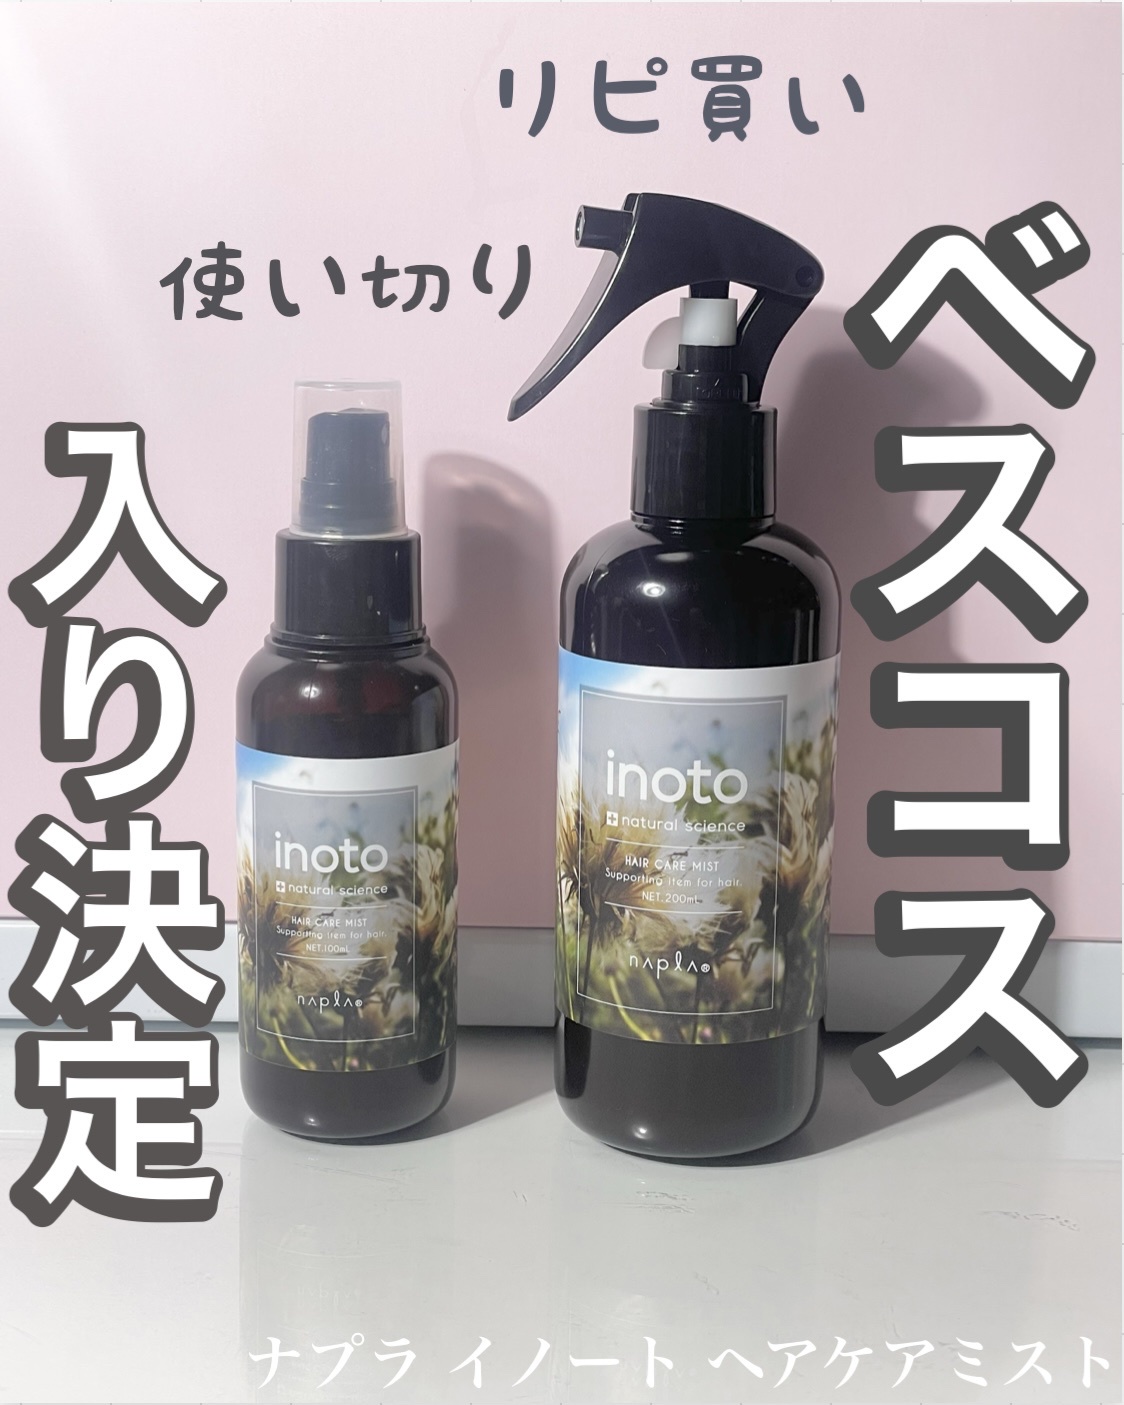 ナプラ / イノート ヘアケアミストの公式商品情報｜美容・化粧品